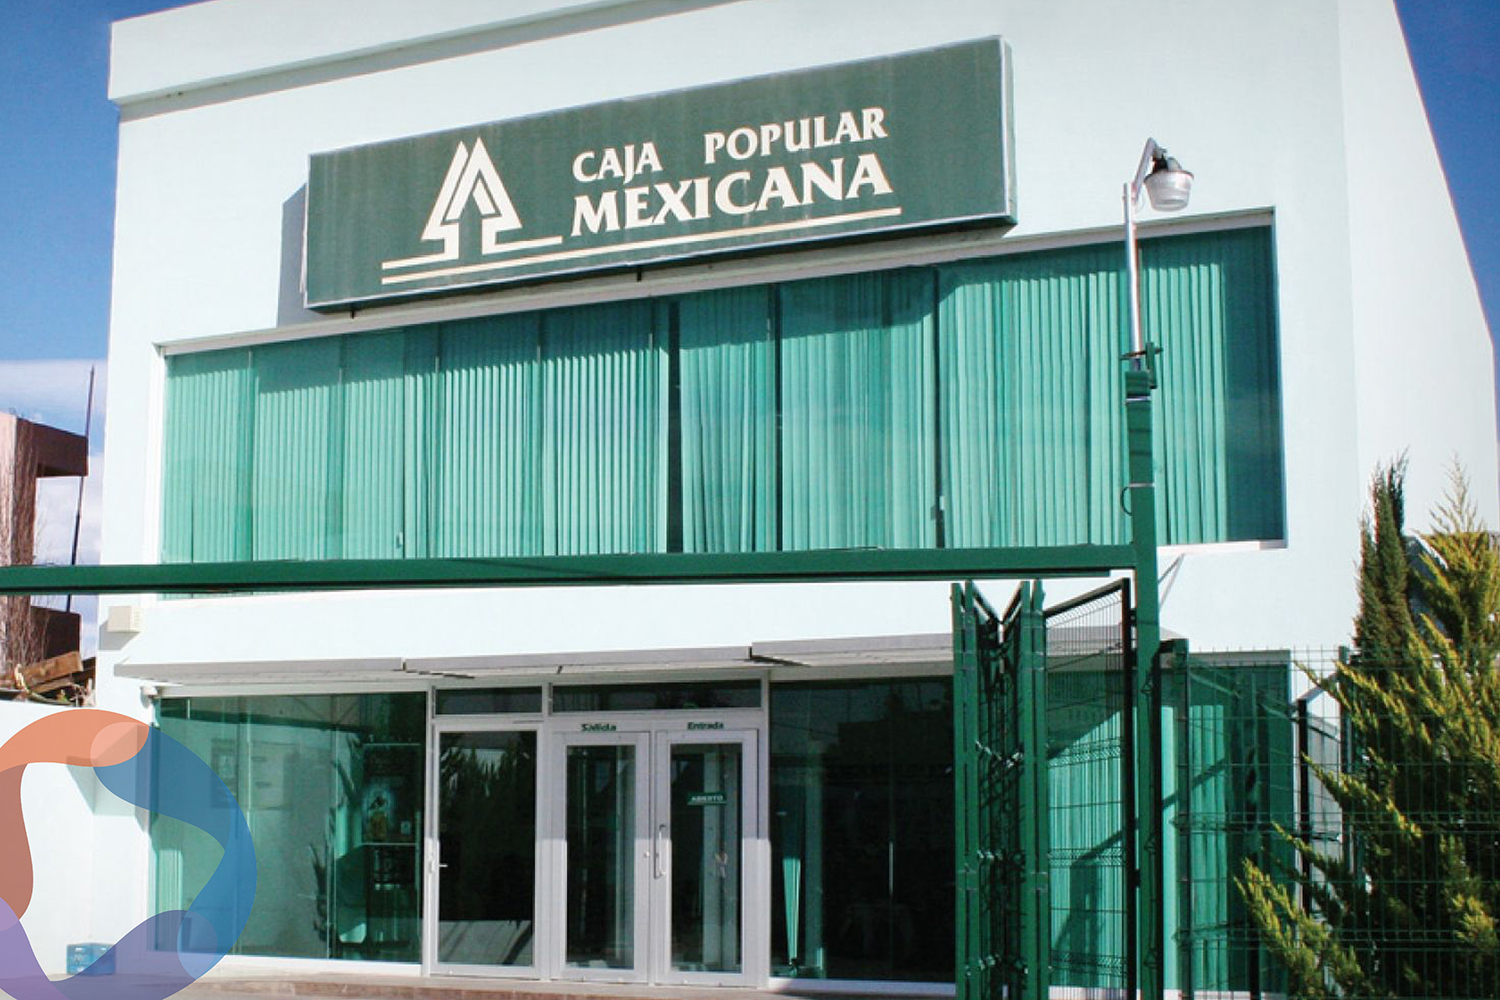 CNBV pone a Caja Popular Mexicana bajo observación; pide normalizar la operación a la brevedad